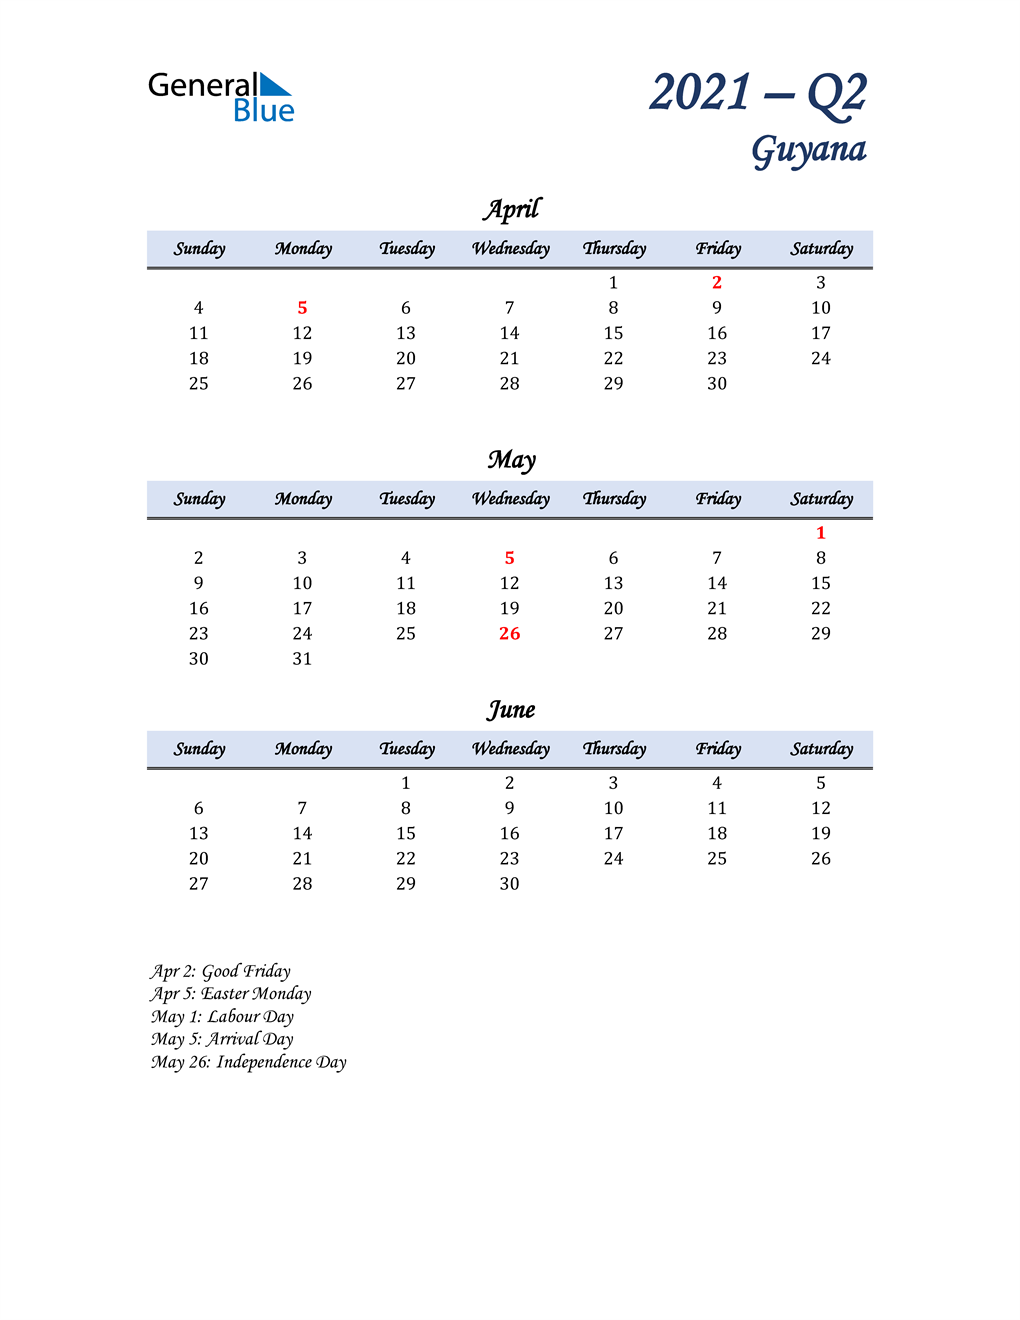  April, May, and June Calendar for Guyana